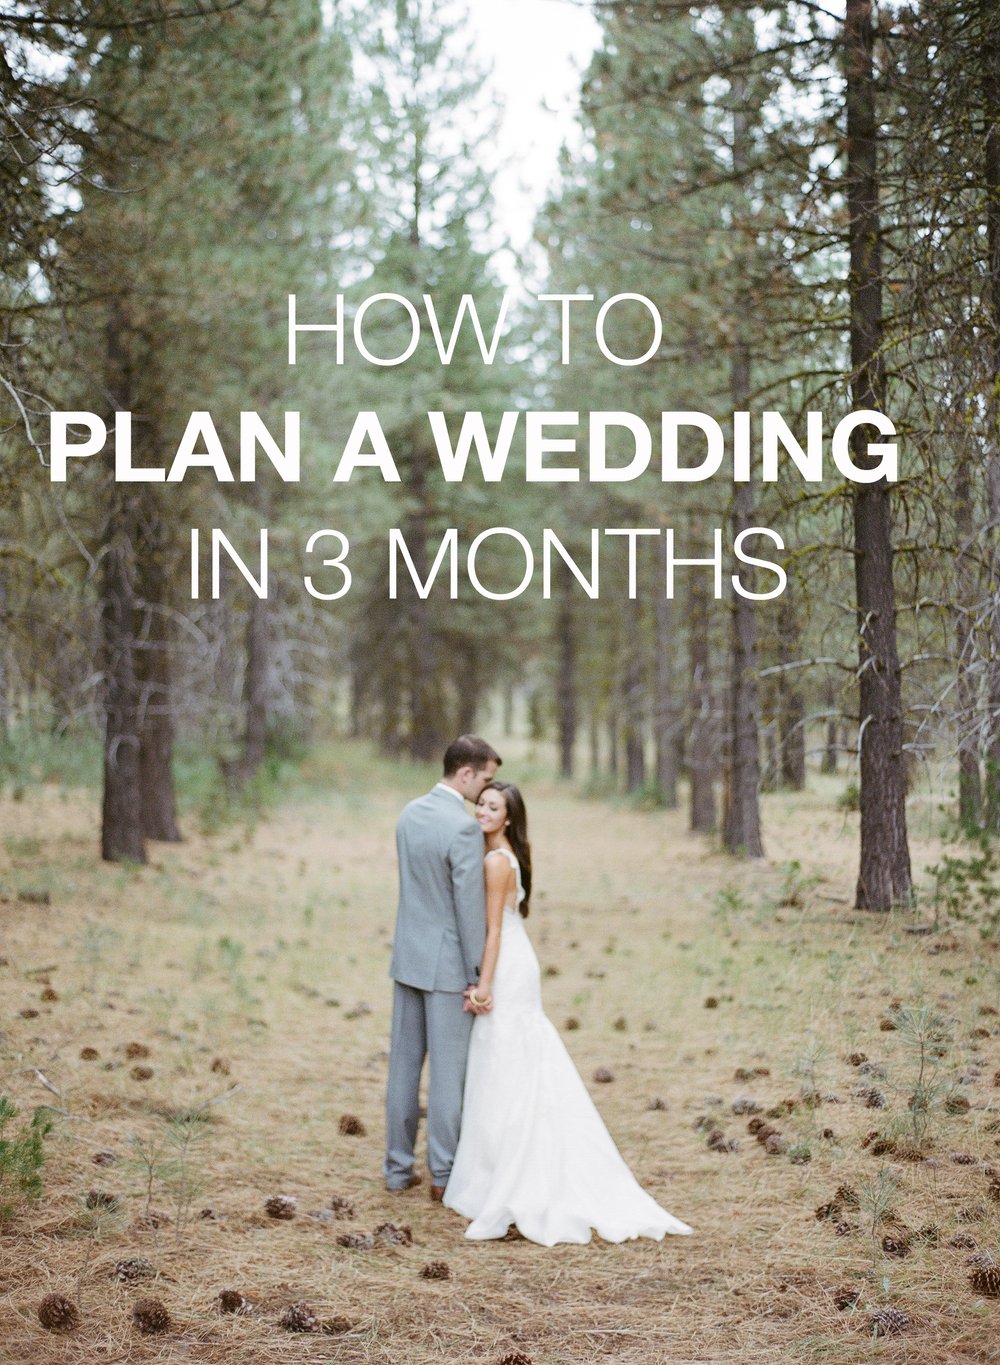 HOW TO PLAN A WEDDING IN 3 MONTHS â Allie Seidel